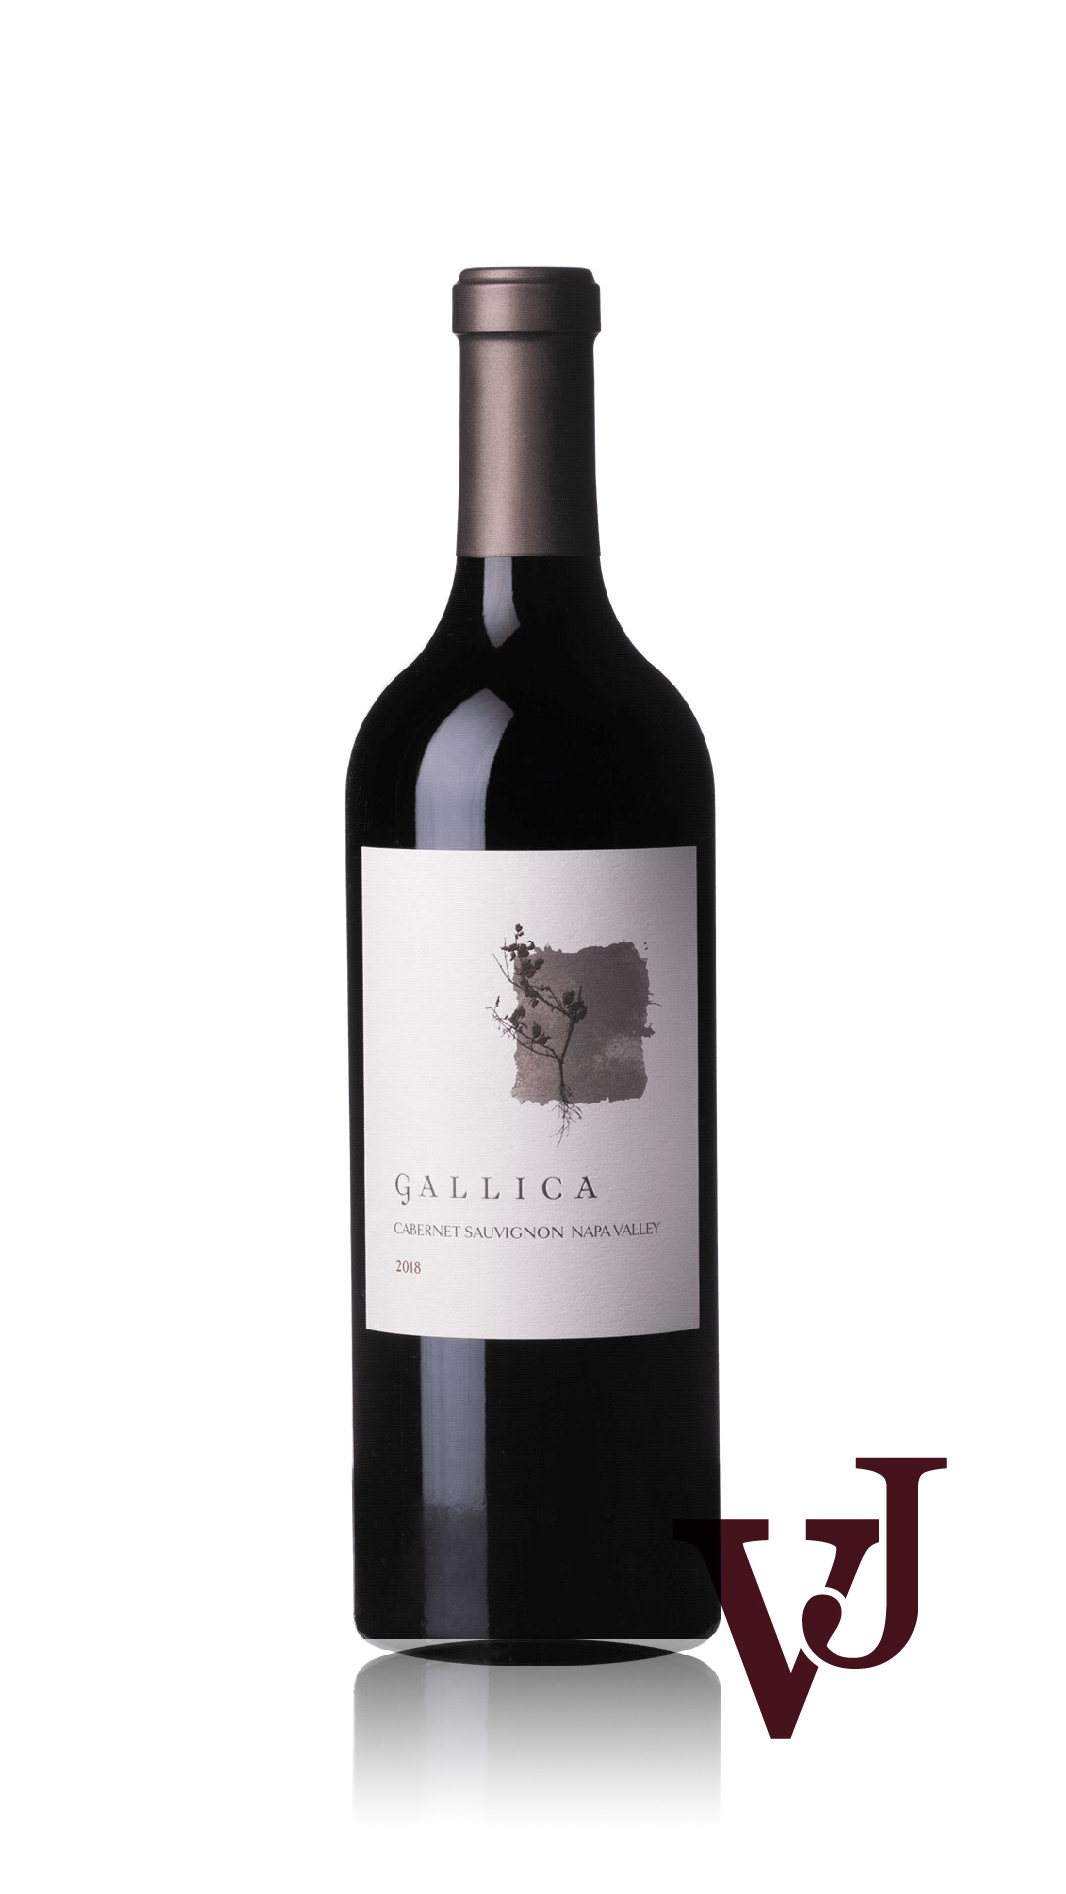 Rött Vin - Gallica Cabernet Sauvignon artikel nummer 9460301 från producenten Gallica Wine från området USA